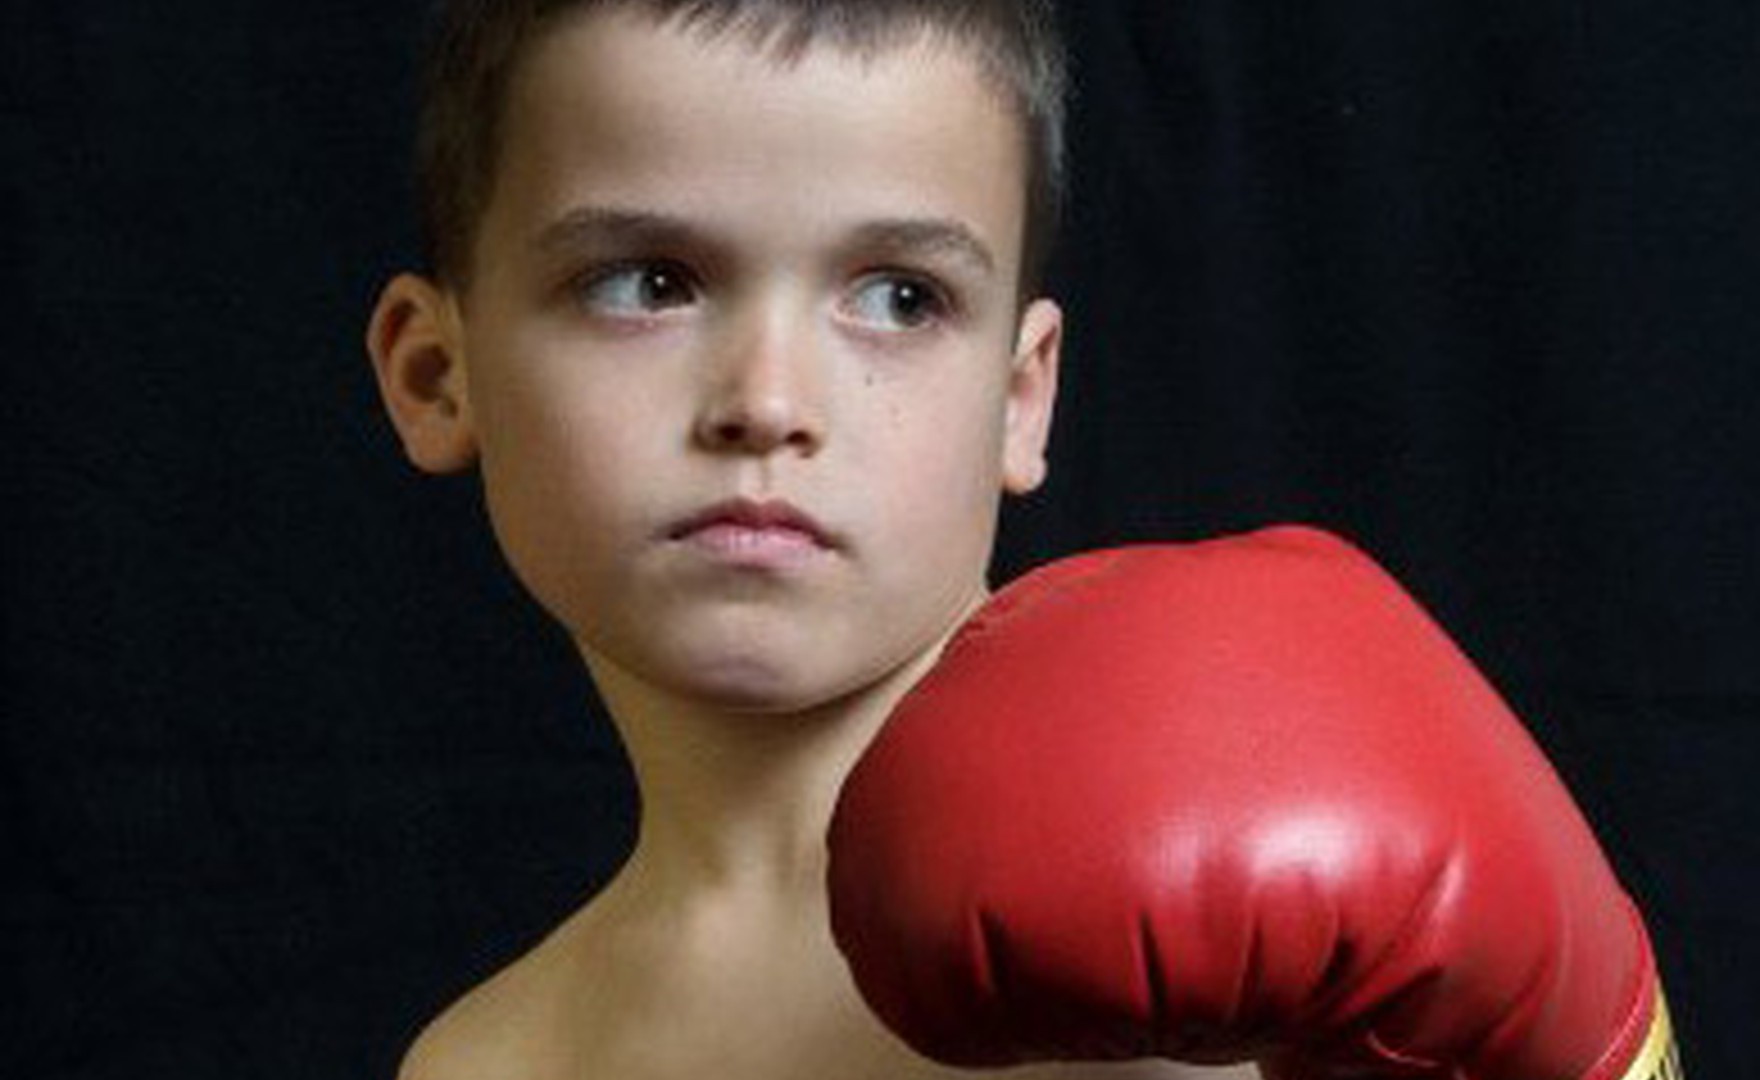 Boxing Gloves for Children?